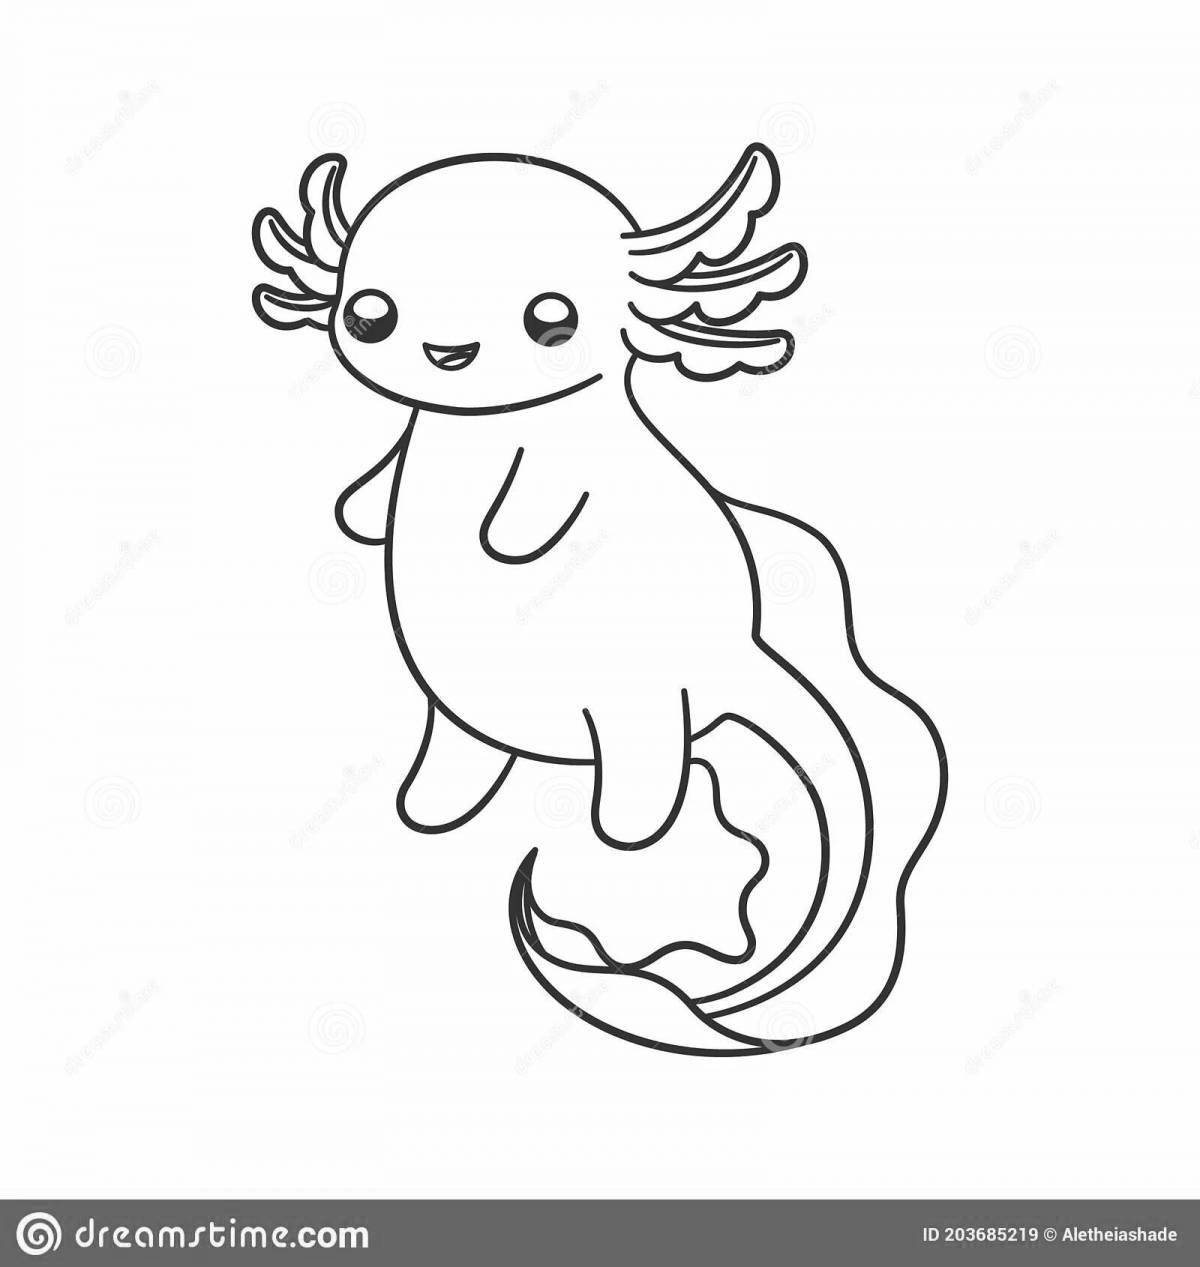 Adorable axolotl coloring book for kids